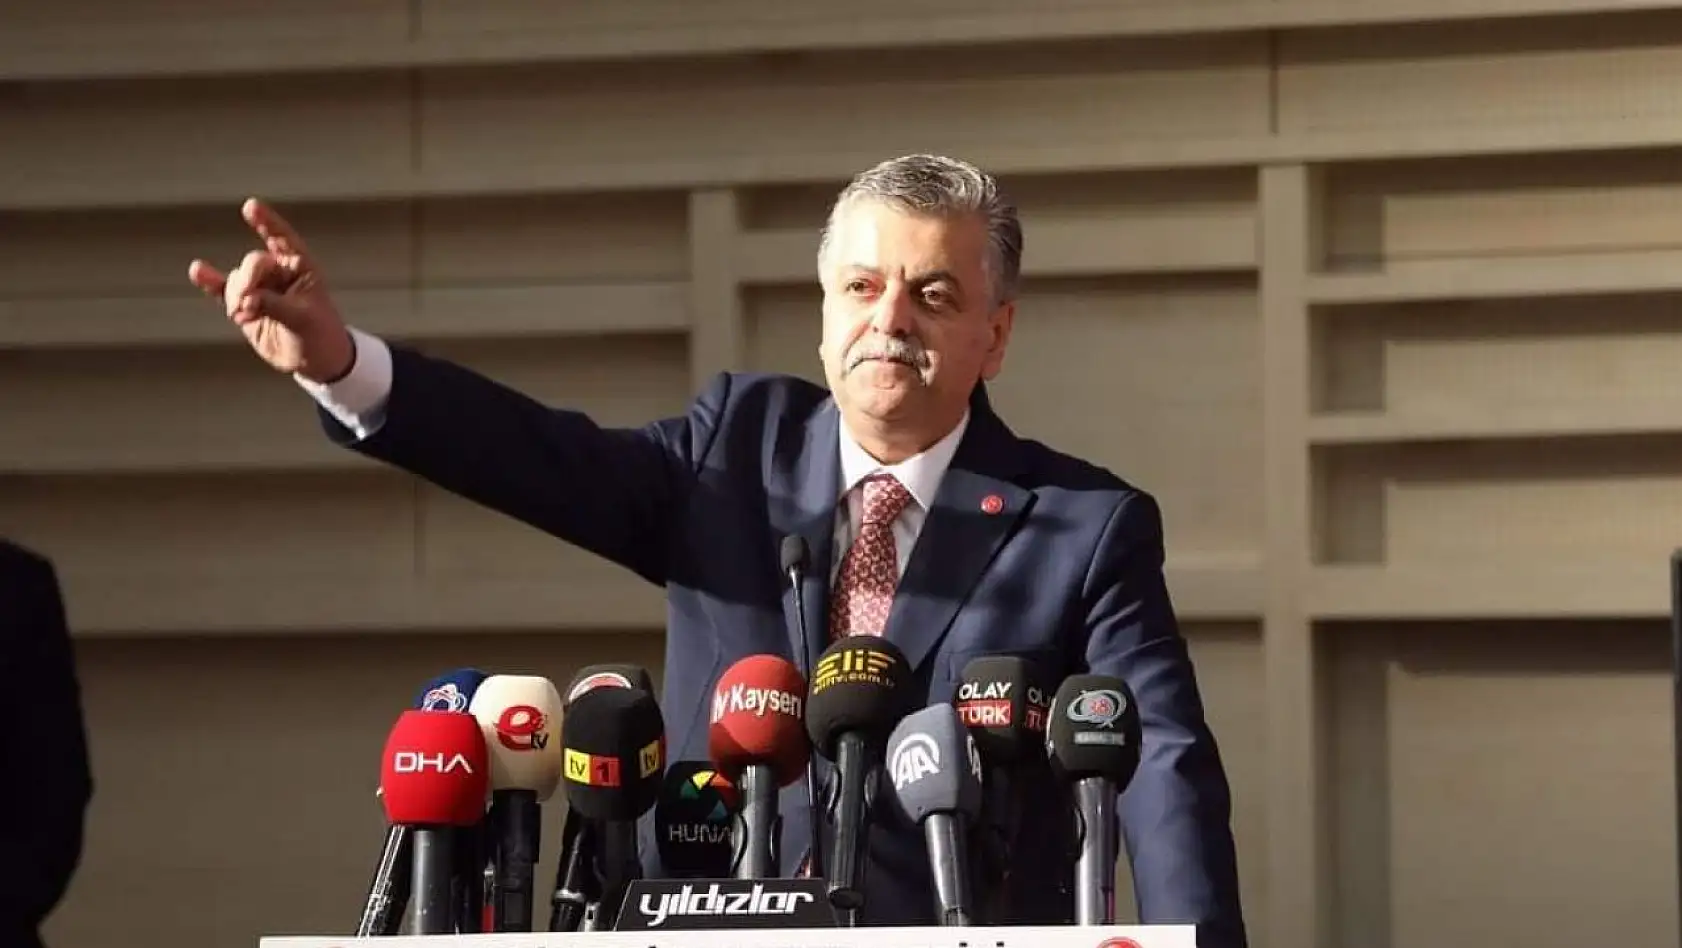 MHP'de Milletvekili adayı gösterilen İncetoprak'tan ilk açıklama